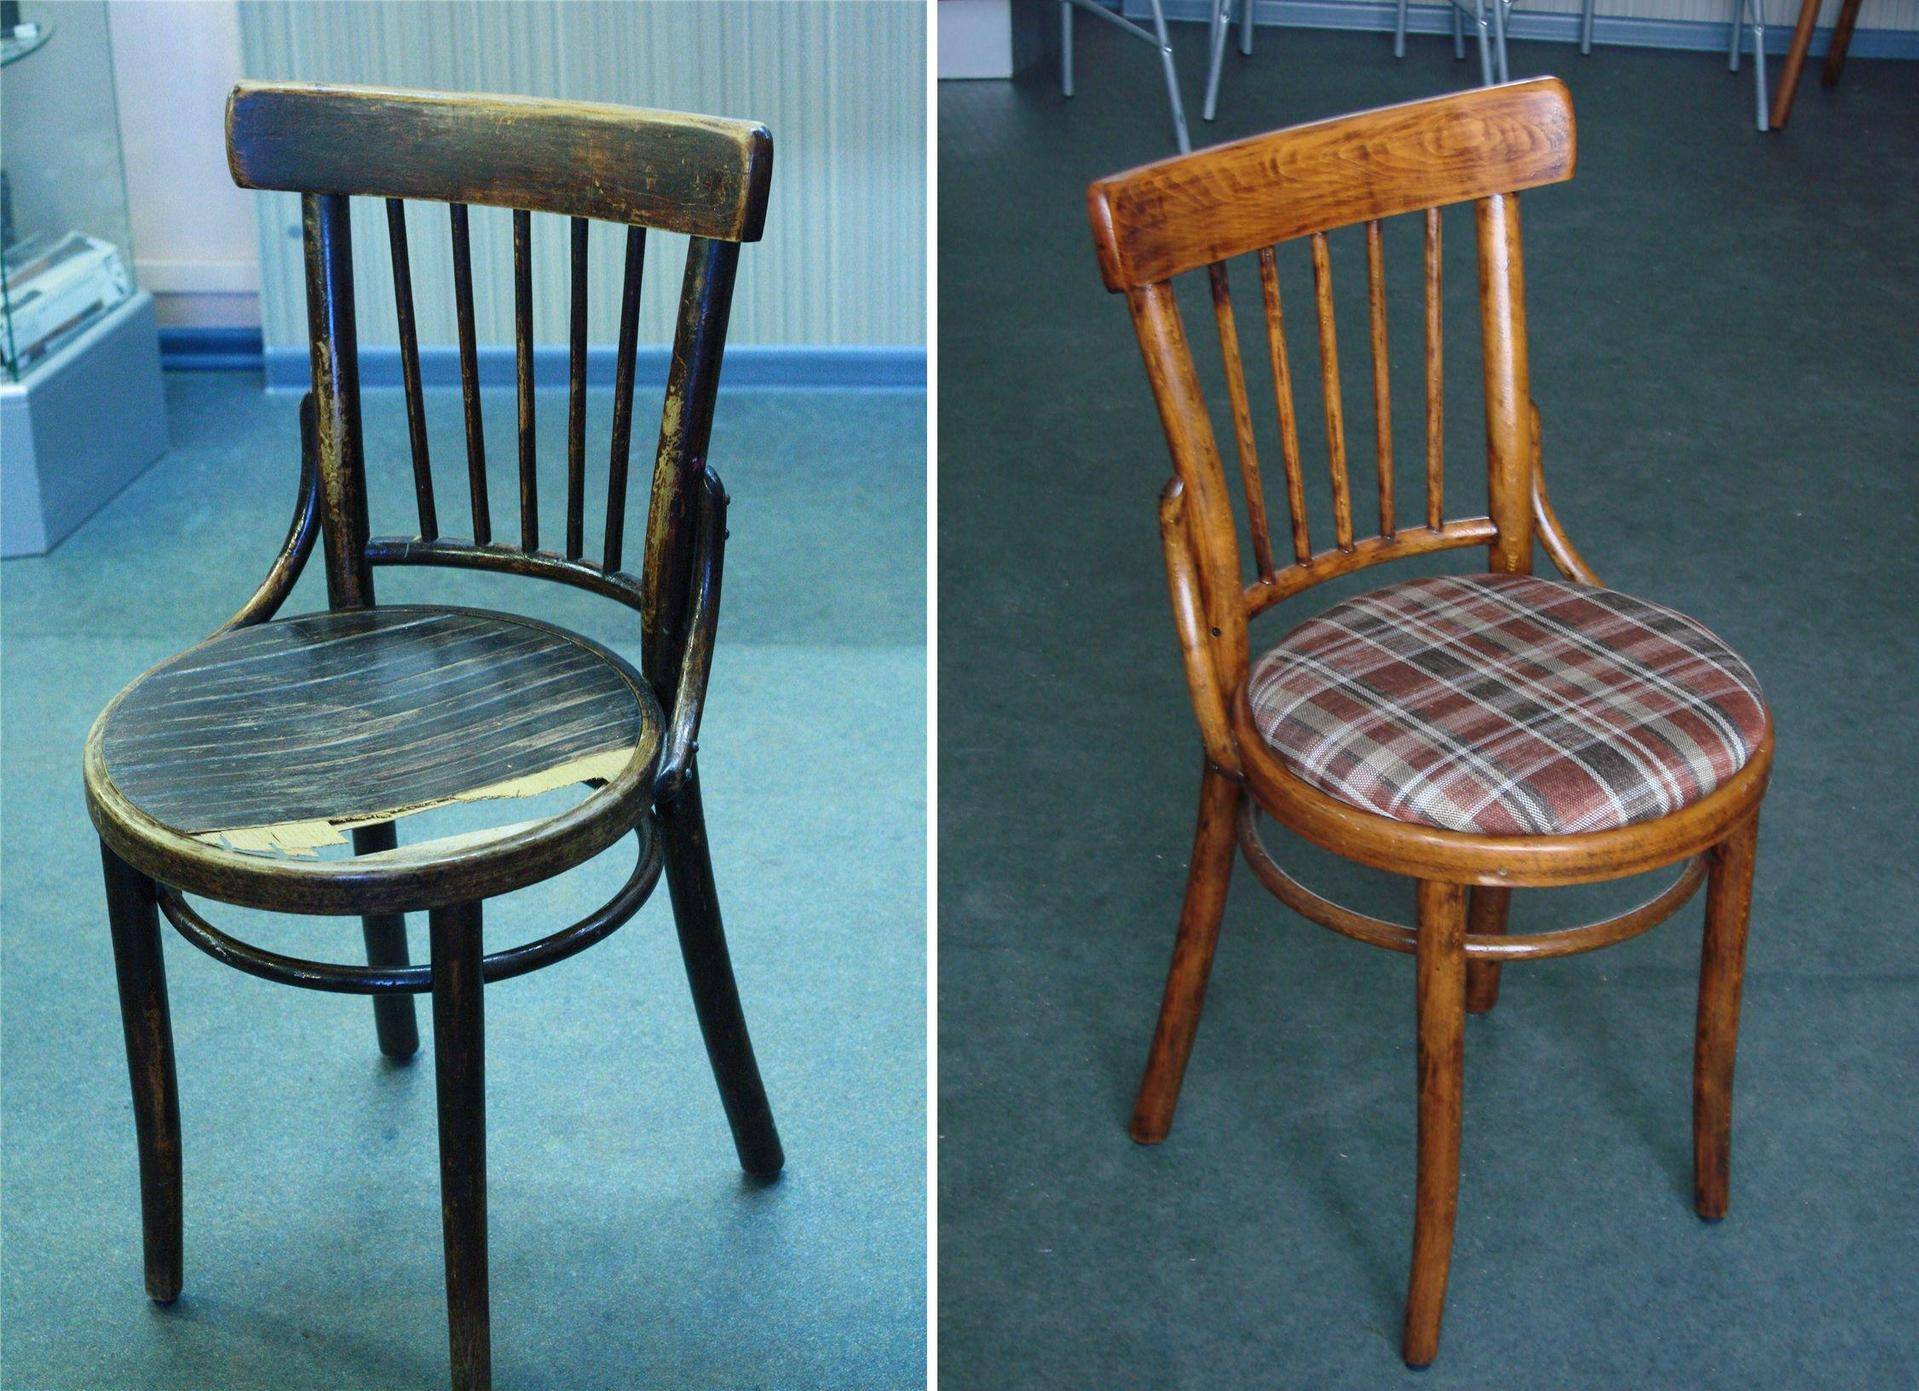 Реставрация старых стульев своими руками Как самостоятельно сделать реставрацию стула или табурета: необходимые инструменты и материалы, очистка, мытьё и просушивание изделия, разборка, ремонт каркаса и сиденья, удаление старой краски, как залить дырки и